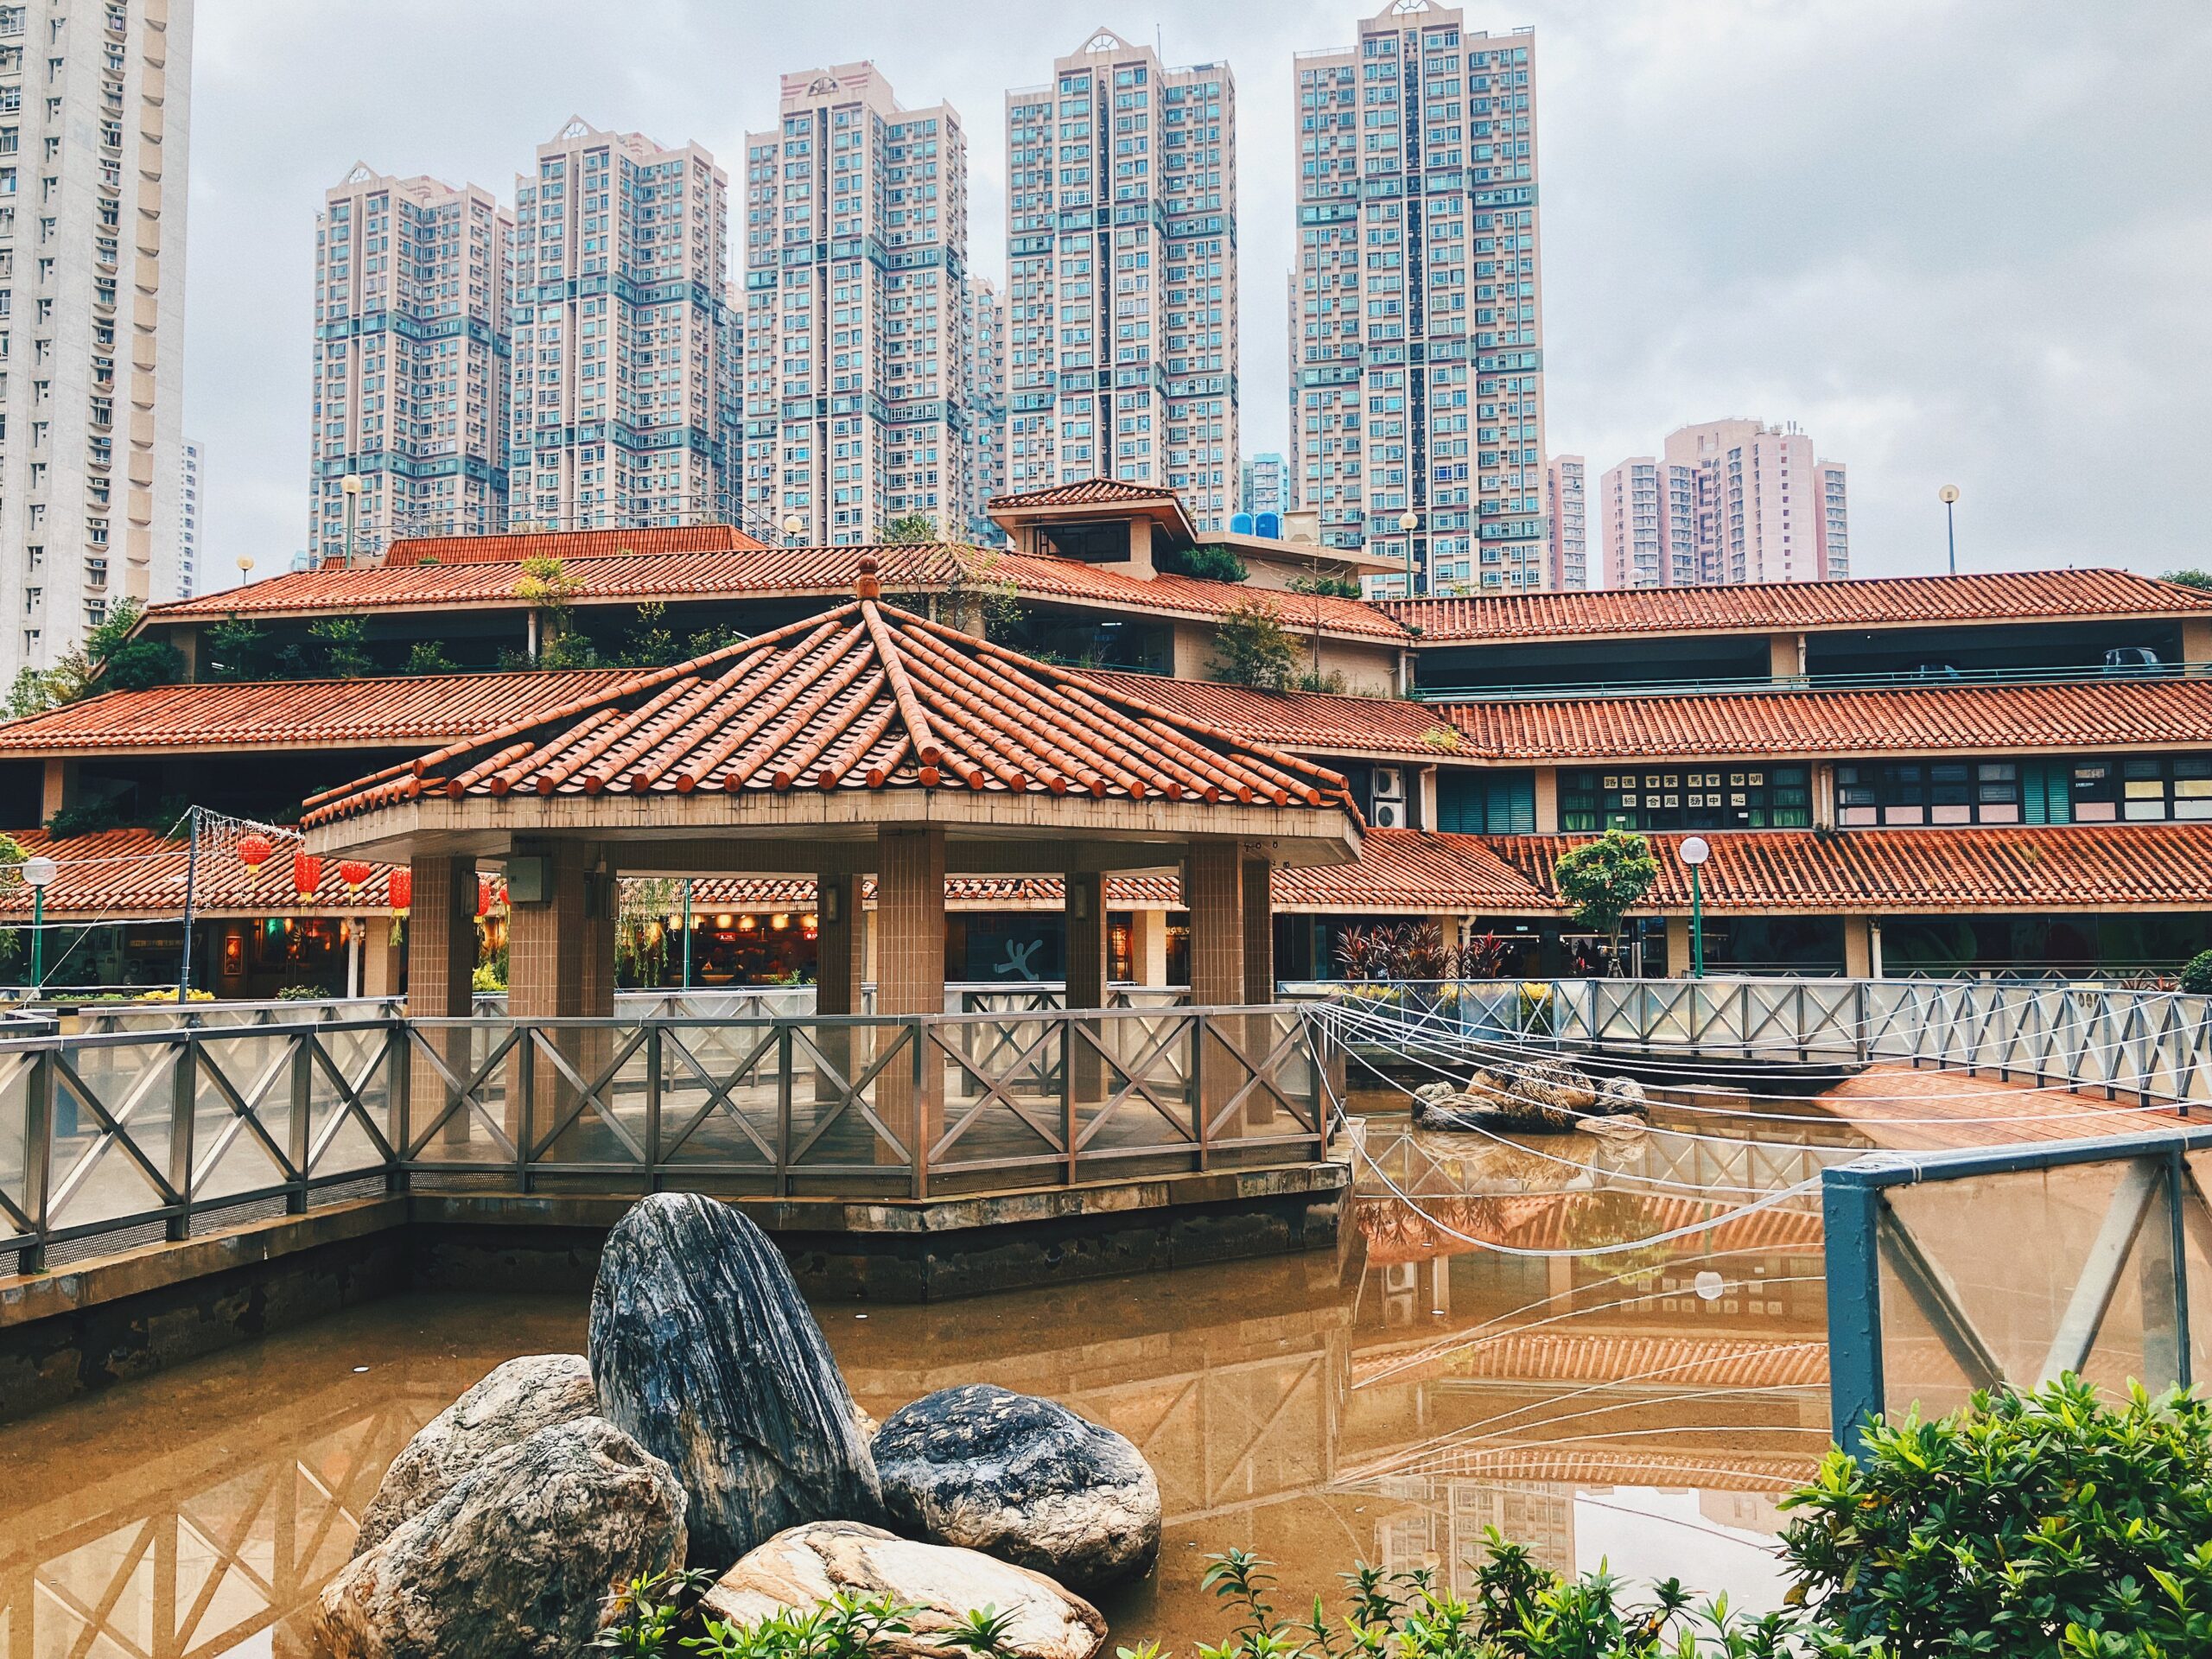 【香港公屋】粉嶺華明邨 從傳統到現代的屋邨風情